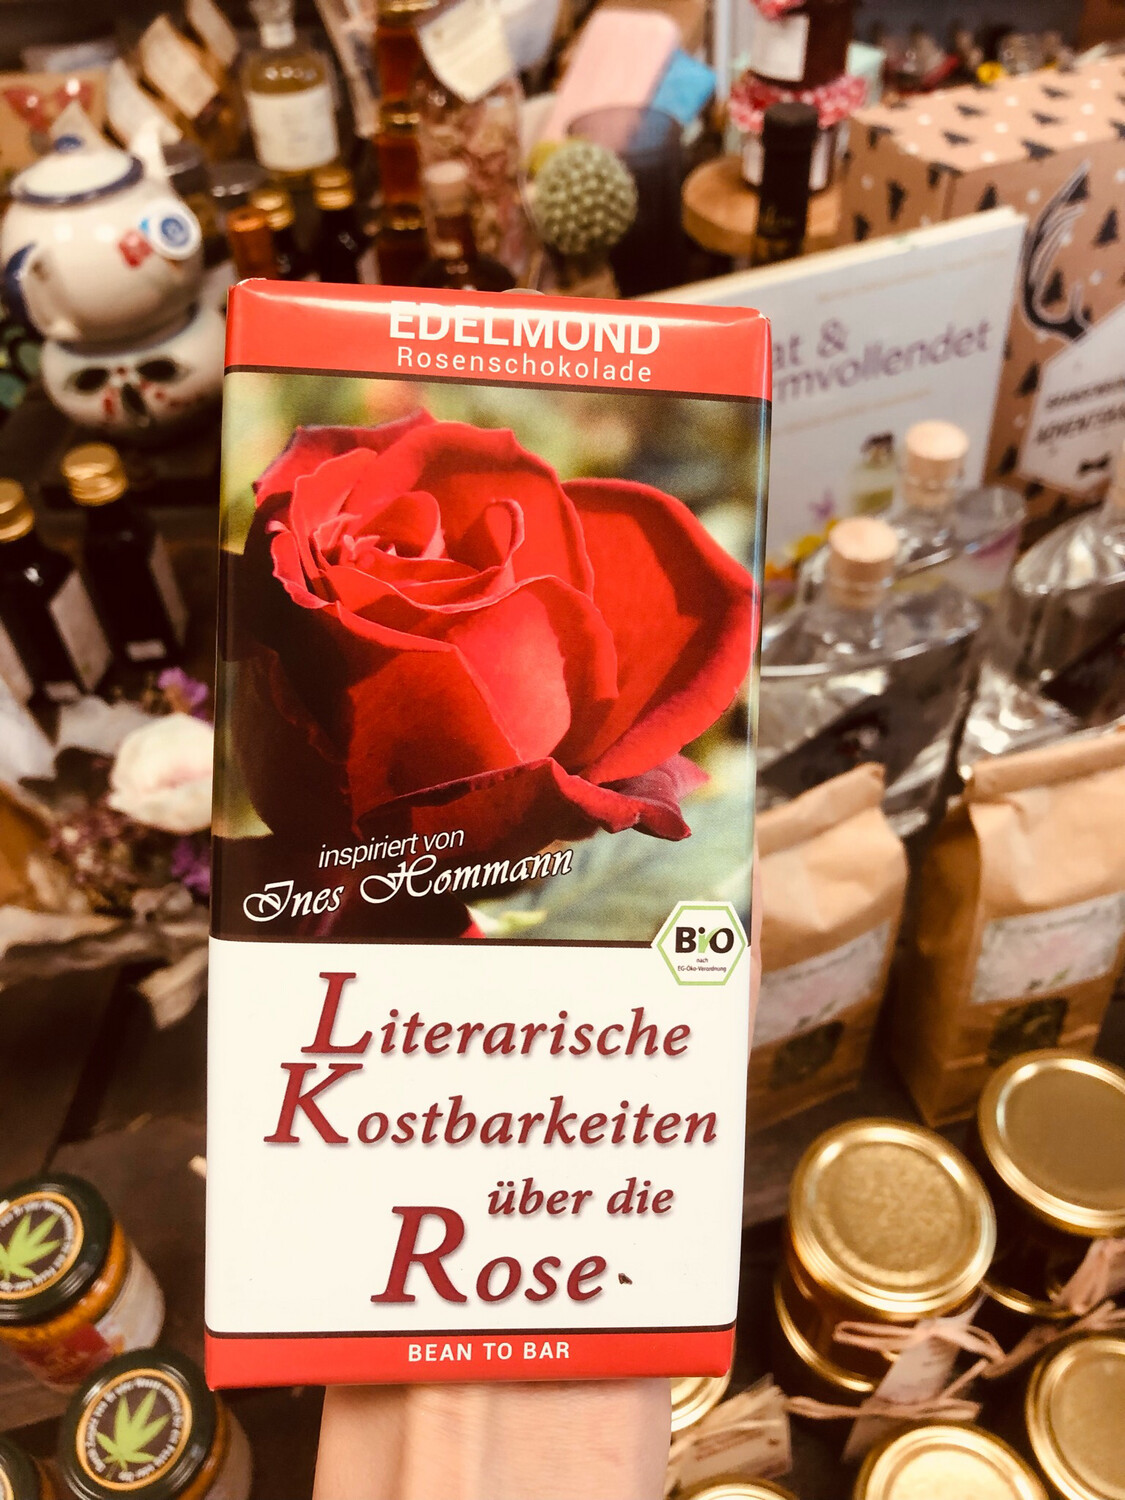 Bean2bar "Literarische Kostbarkeit über die Rose" I 58 % Kakao I 75 g I Bio I Vegan I Edelmond